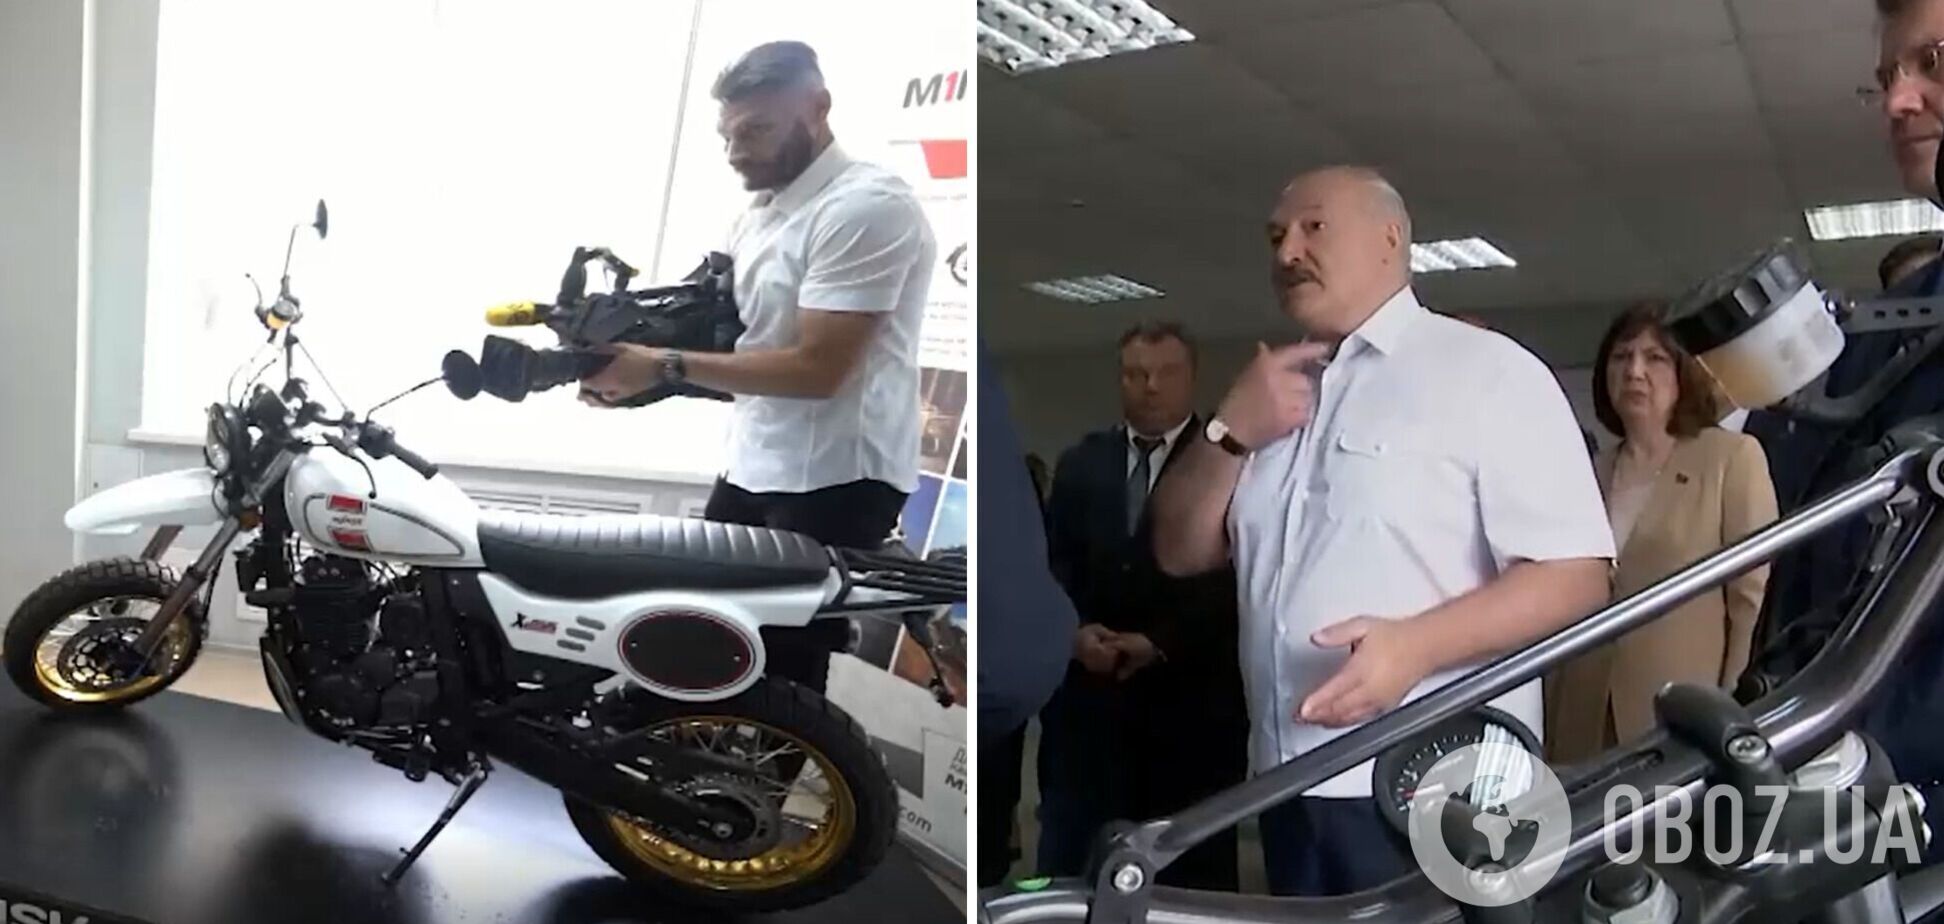 'А що тут білоруського?'  Лукашенко невдало похизувався новим мотоциклом 'Мінськ' із китайських деталей. Відео